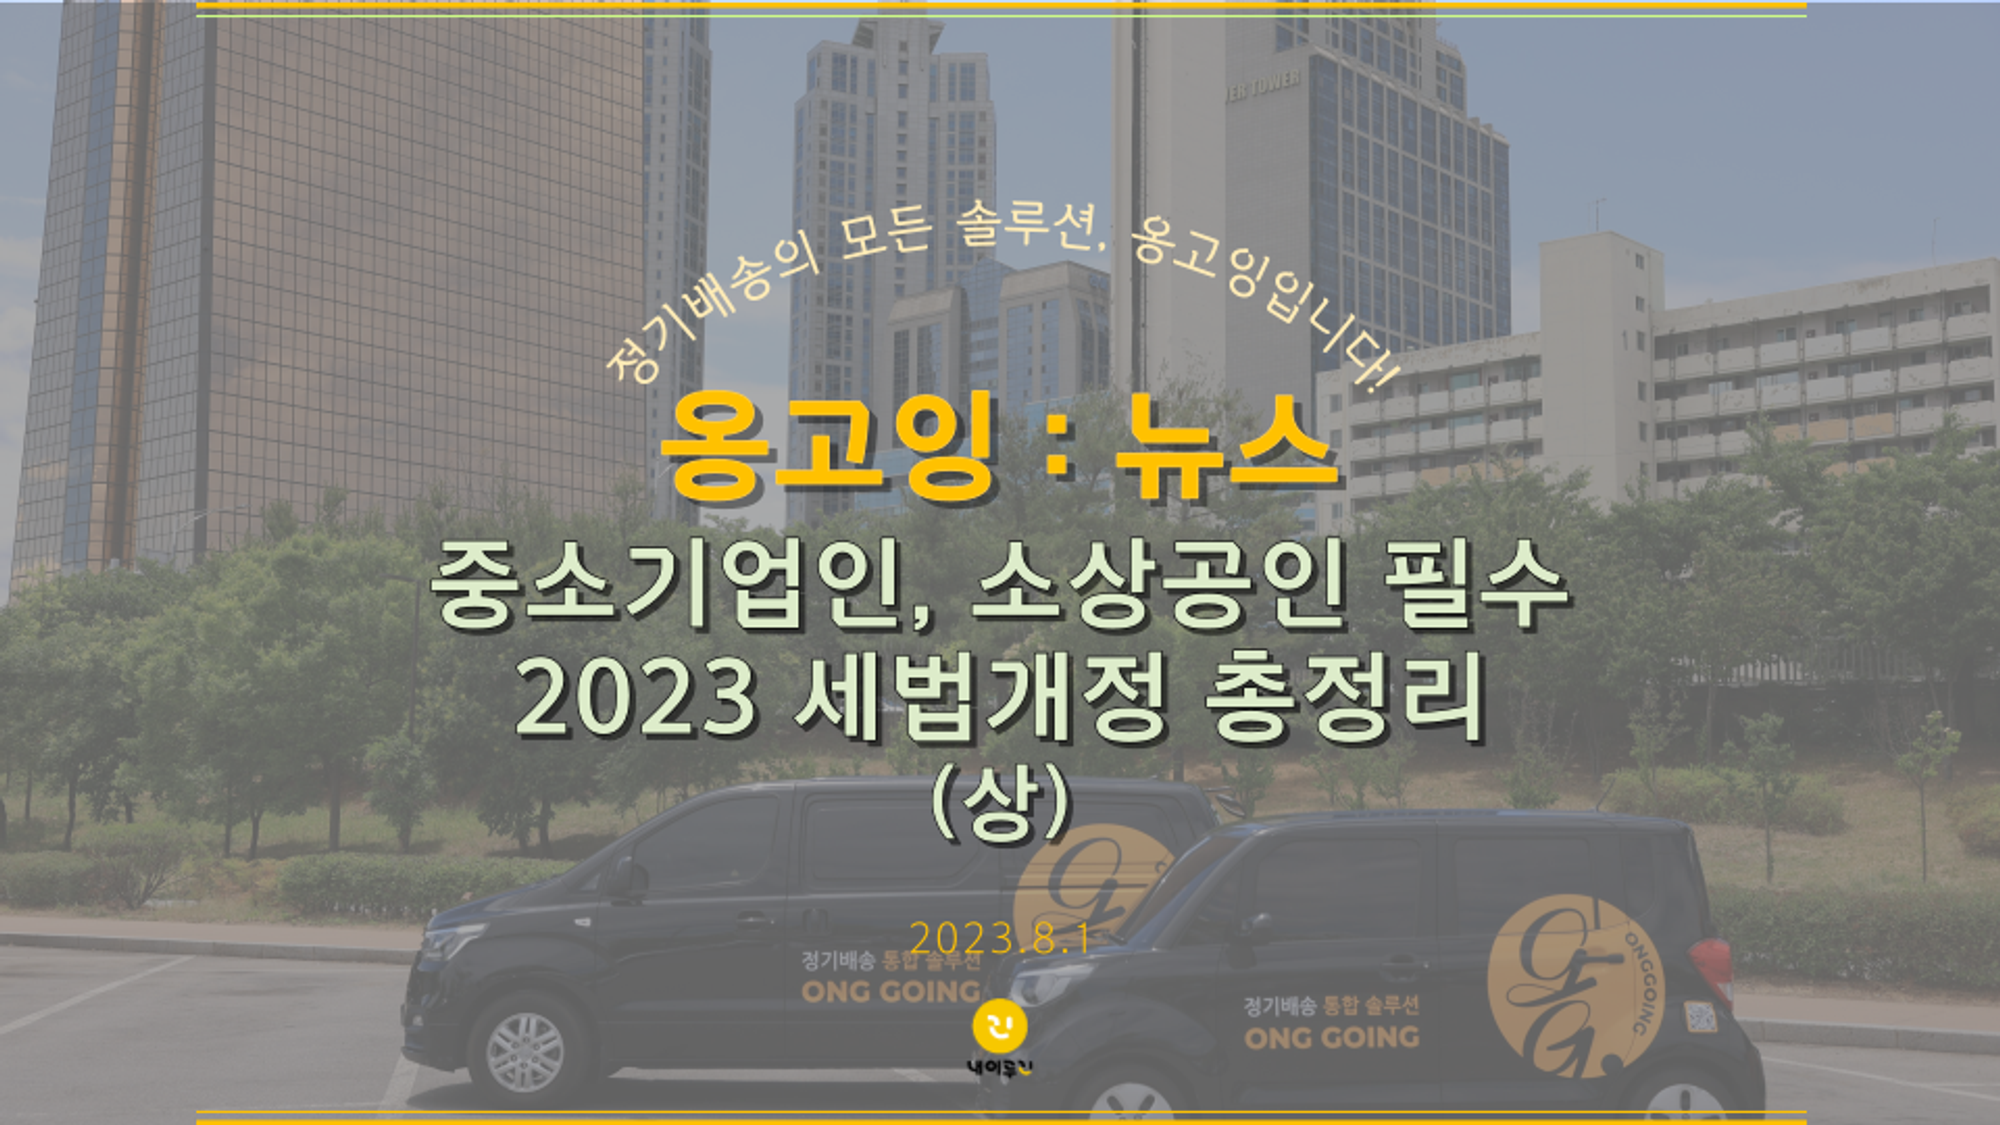 [옹고잉:뉴스] 중소기업인, 소상공인 필수 2023 세법개정 총정 (상)